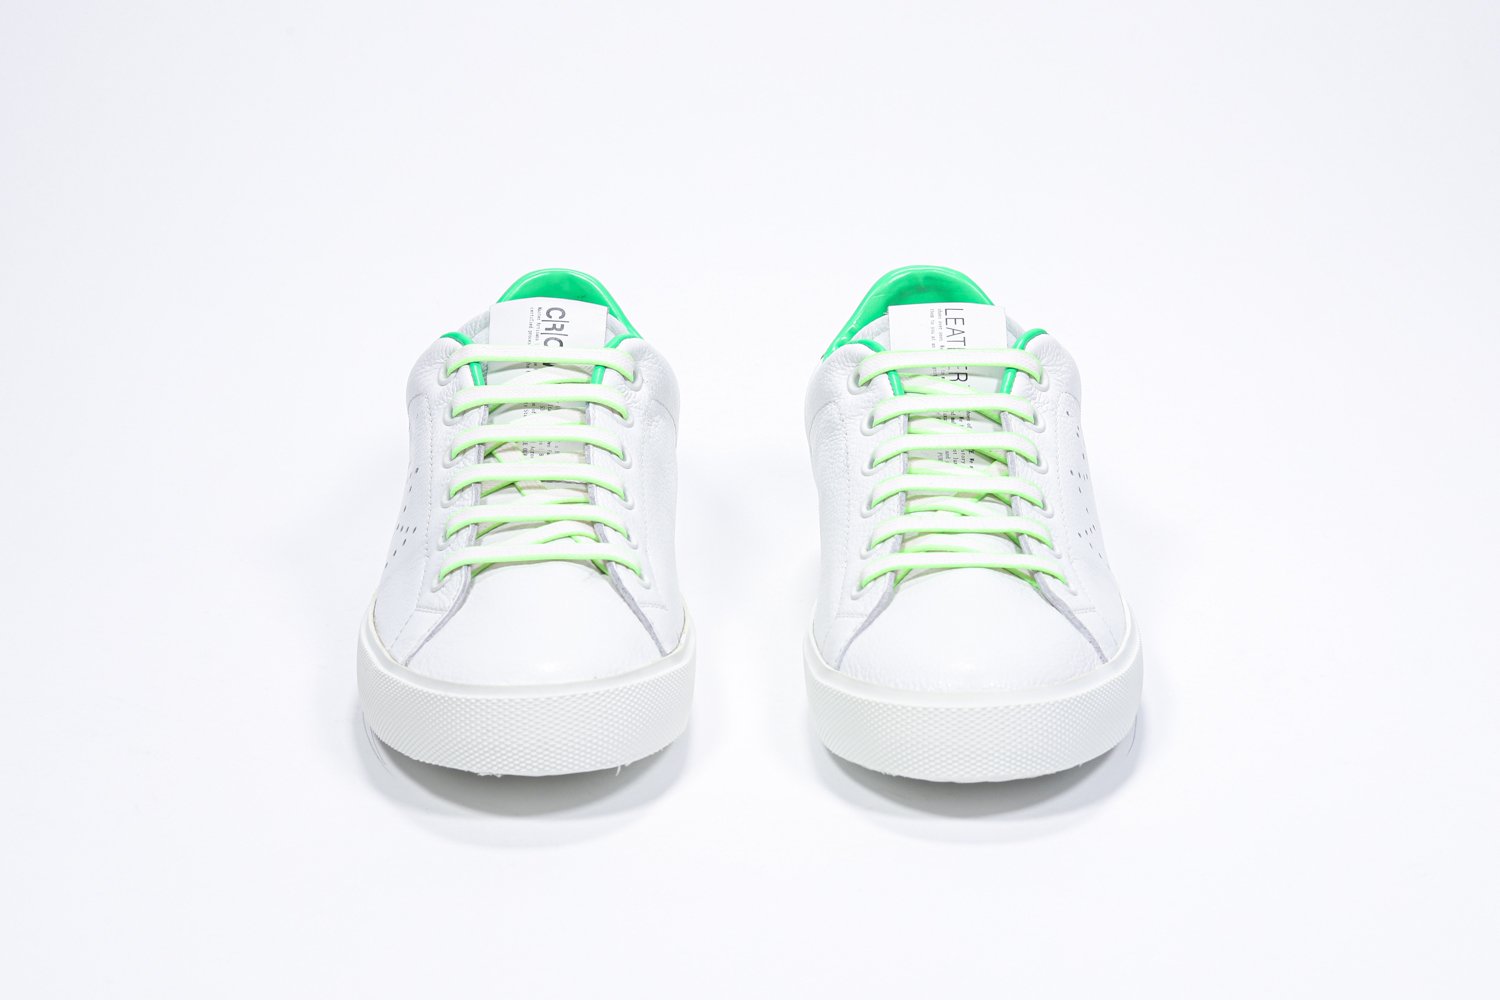 Vue avant de la chaussure blanche sneaker avec des détails vert fluo et le logo perforé de la couronne sur la tige. Tige en cuir et semelle en caoutchouc blanc.